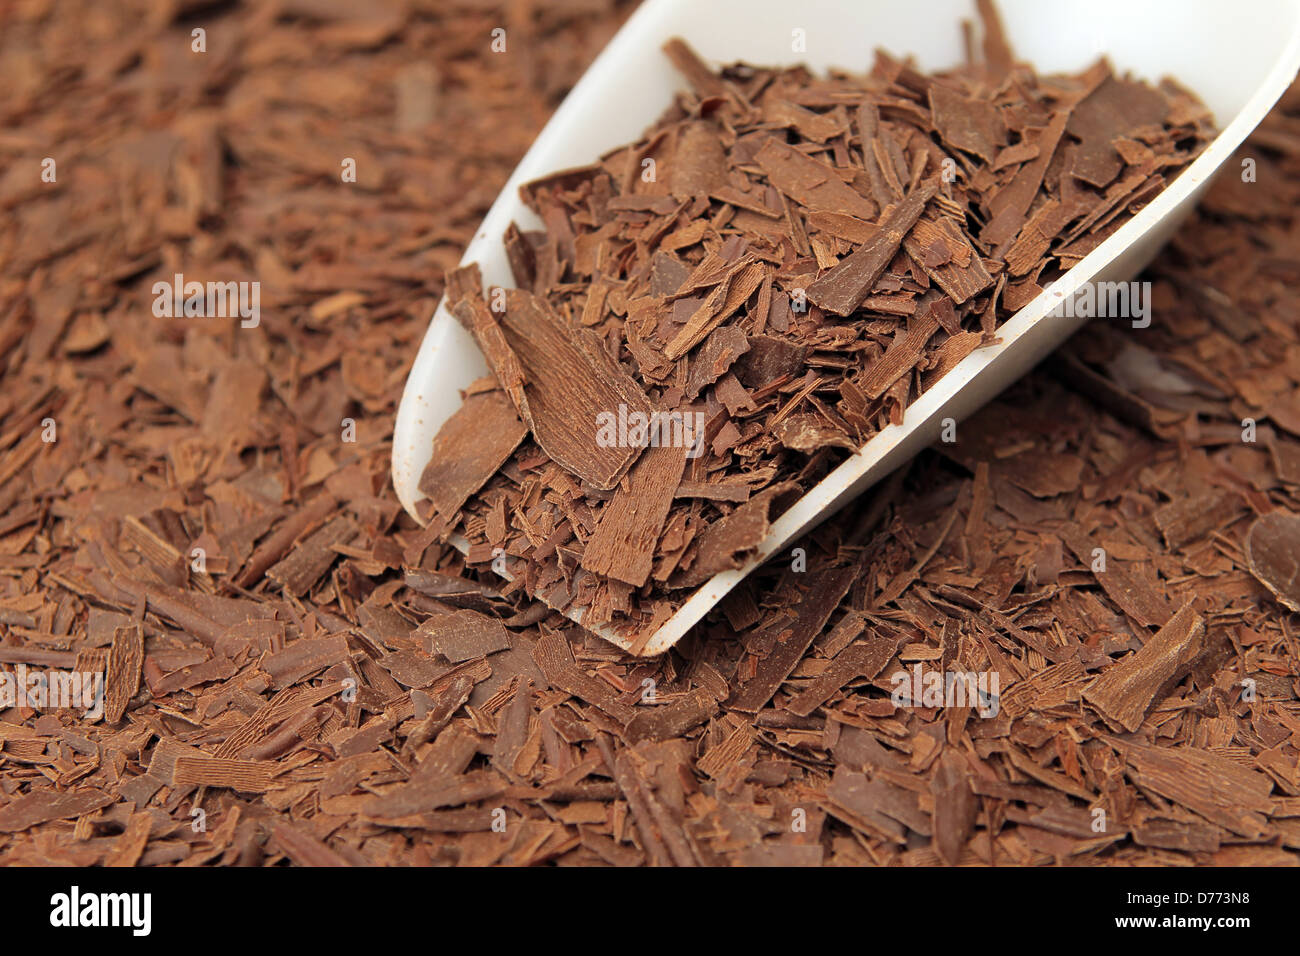 Handewitt, Allemagne, de chocolat râpé dans une usine de chocolat Banque D'Images